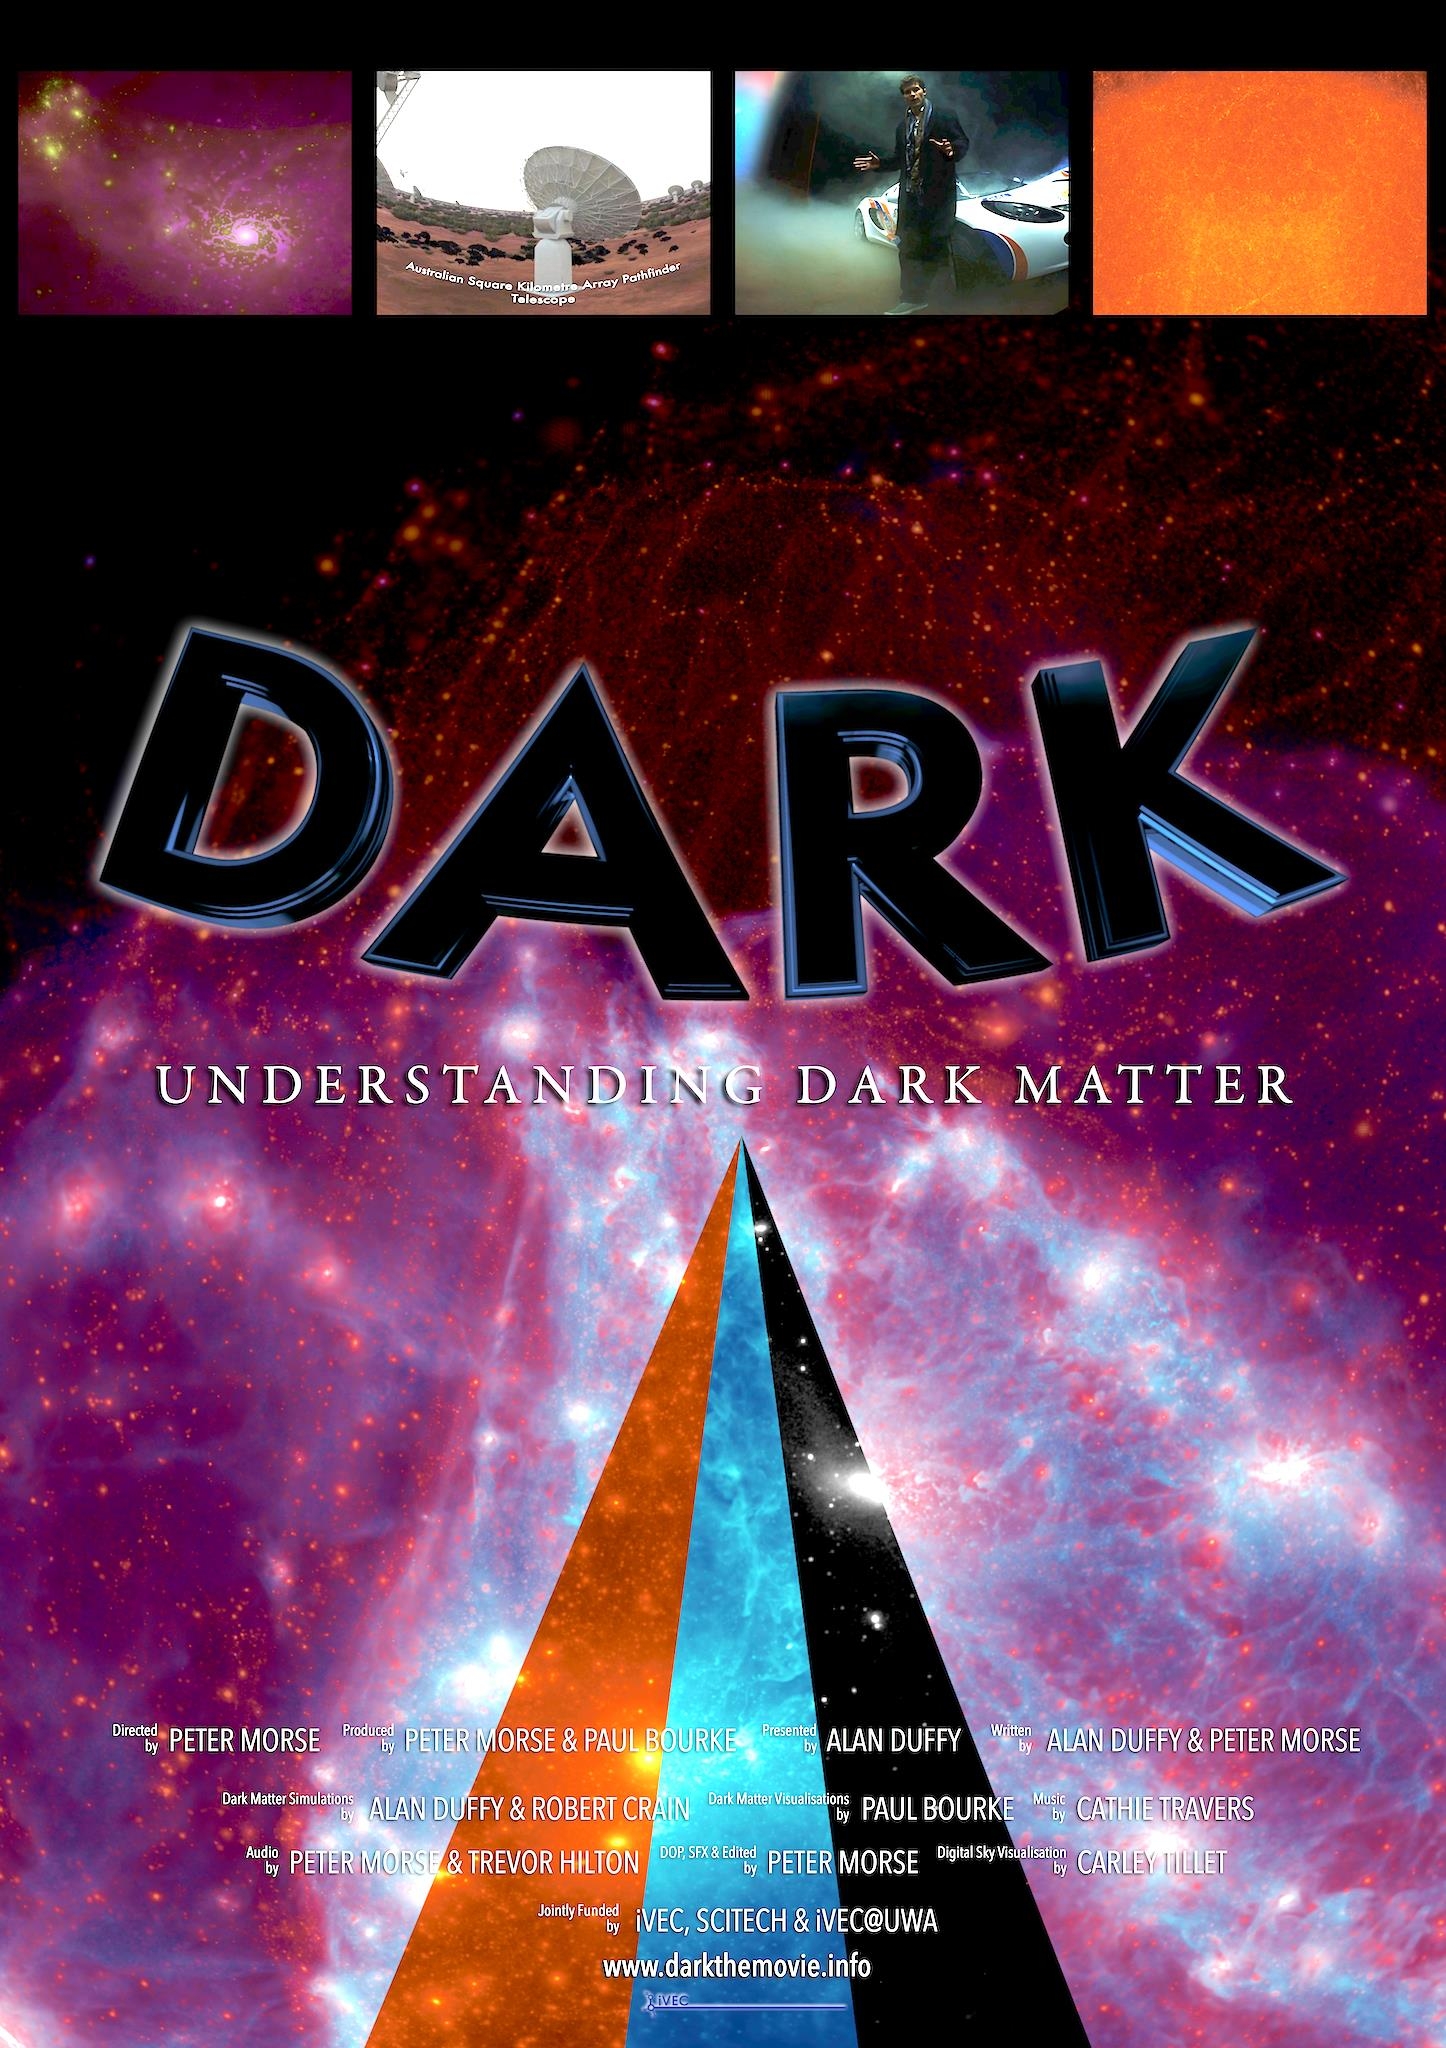 Dark: Understanding Dark Matter